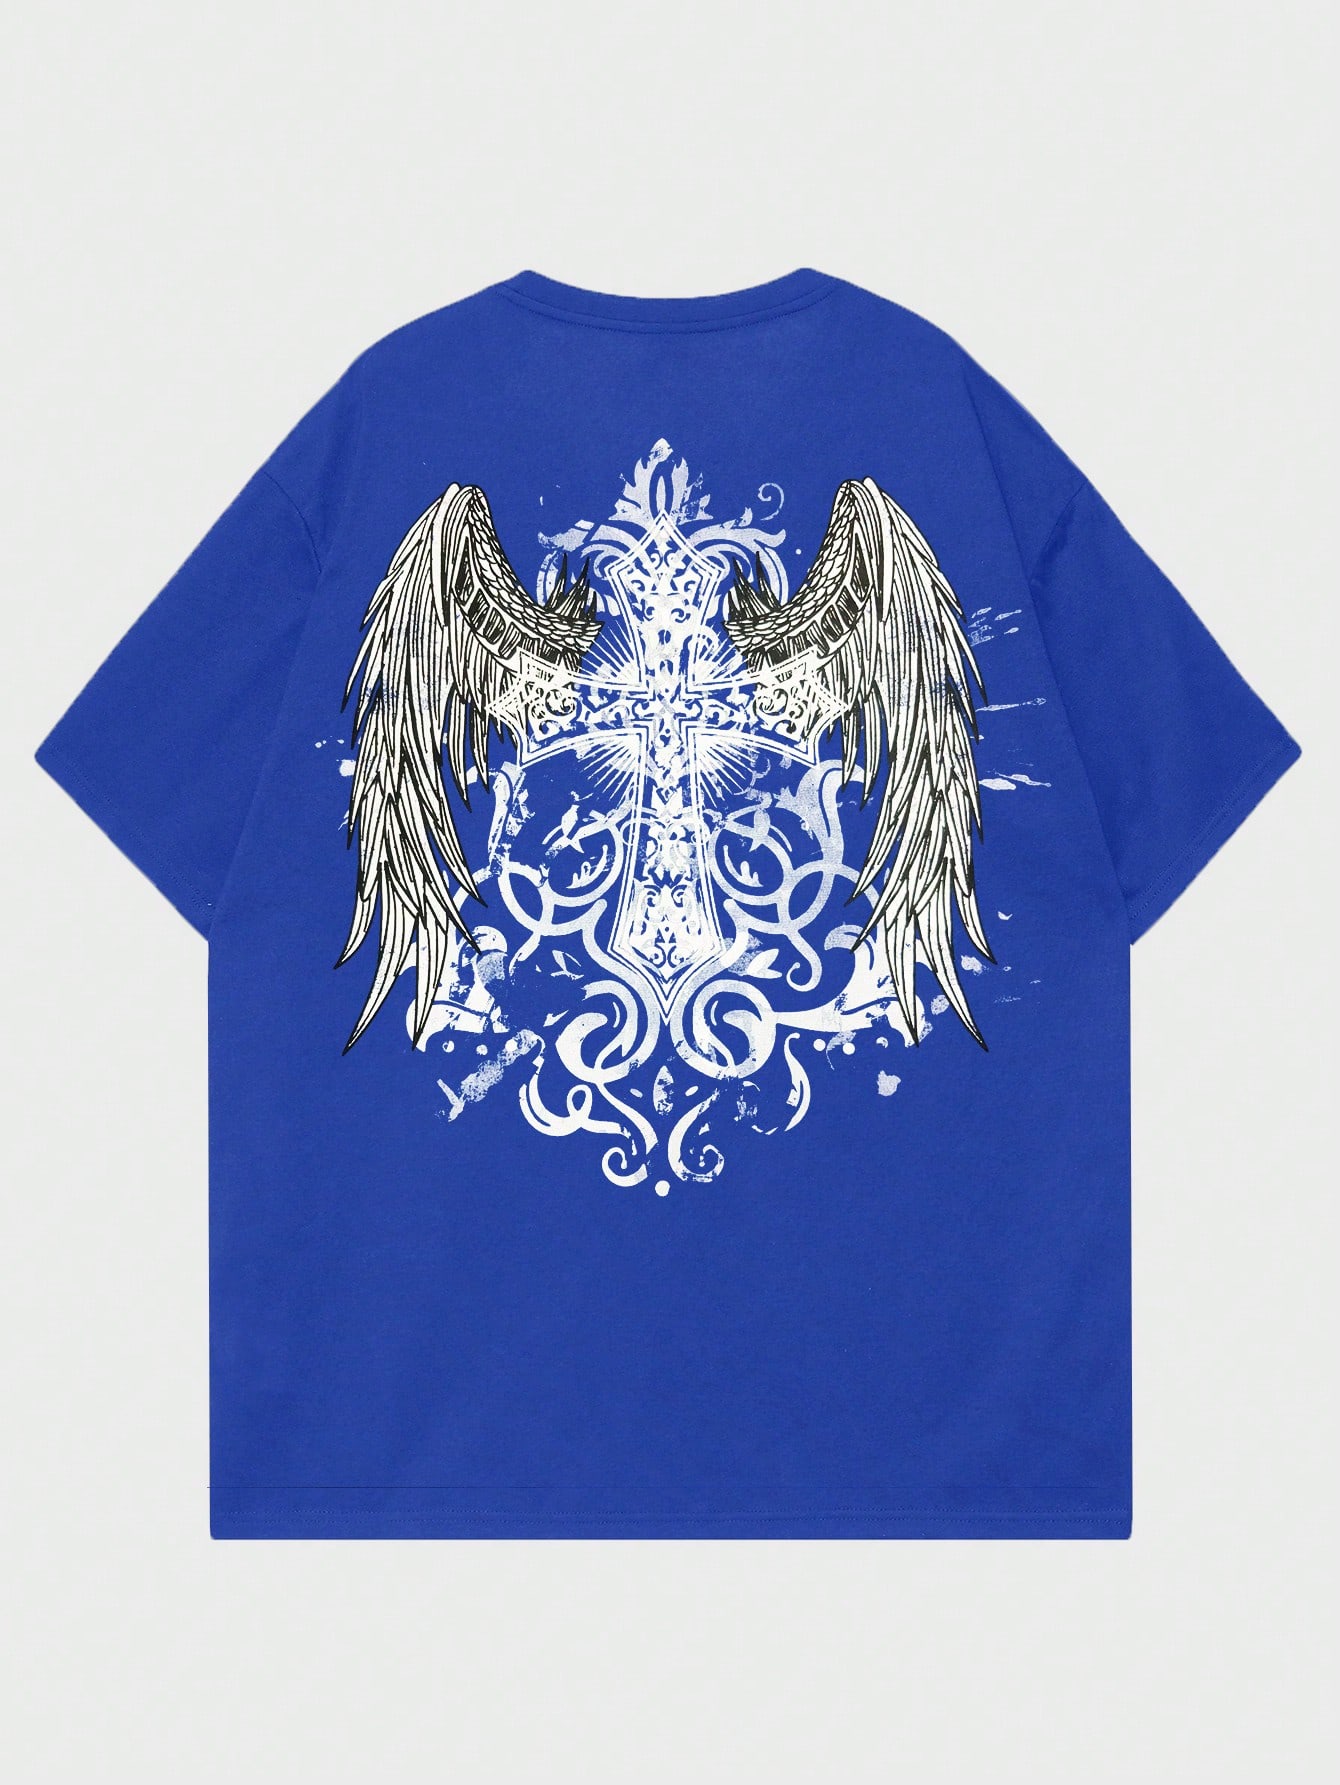 ROMWE Goth Мужская футболка с принтом снежинки и крестом для повседневной жизни, синий